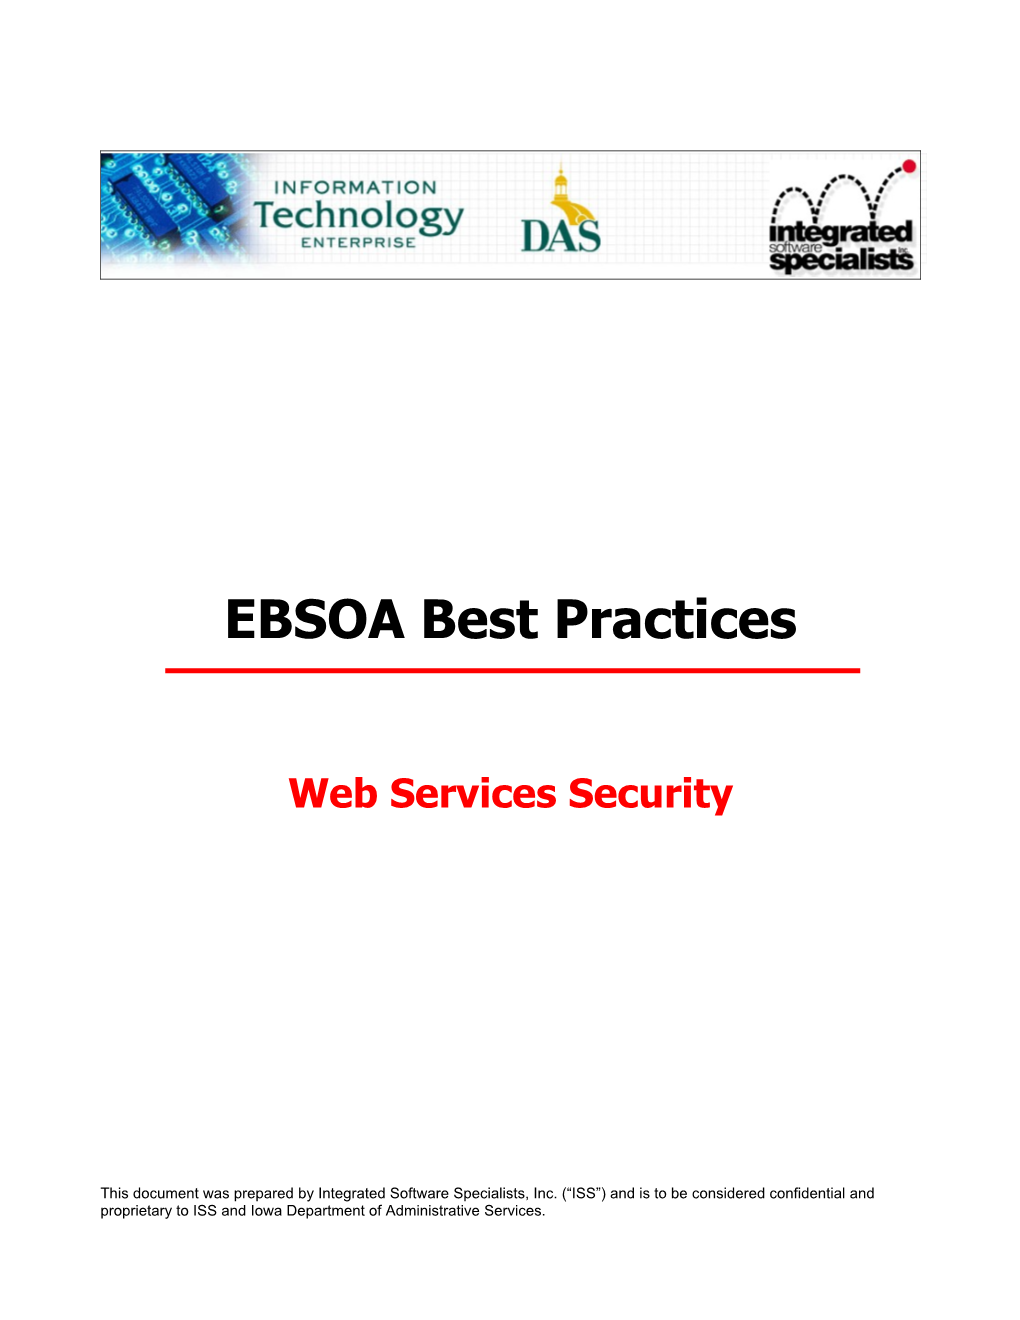 EBSOA Best Practices: WS Security